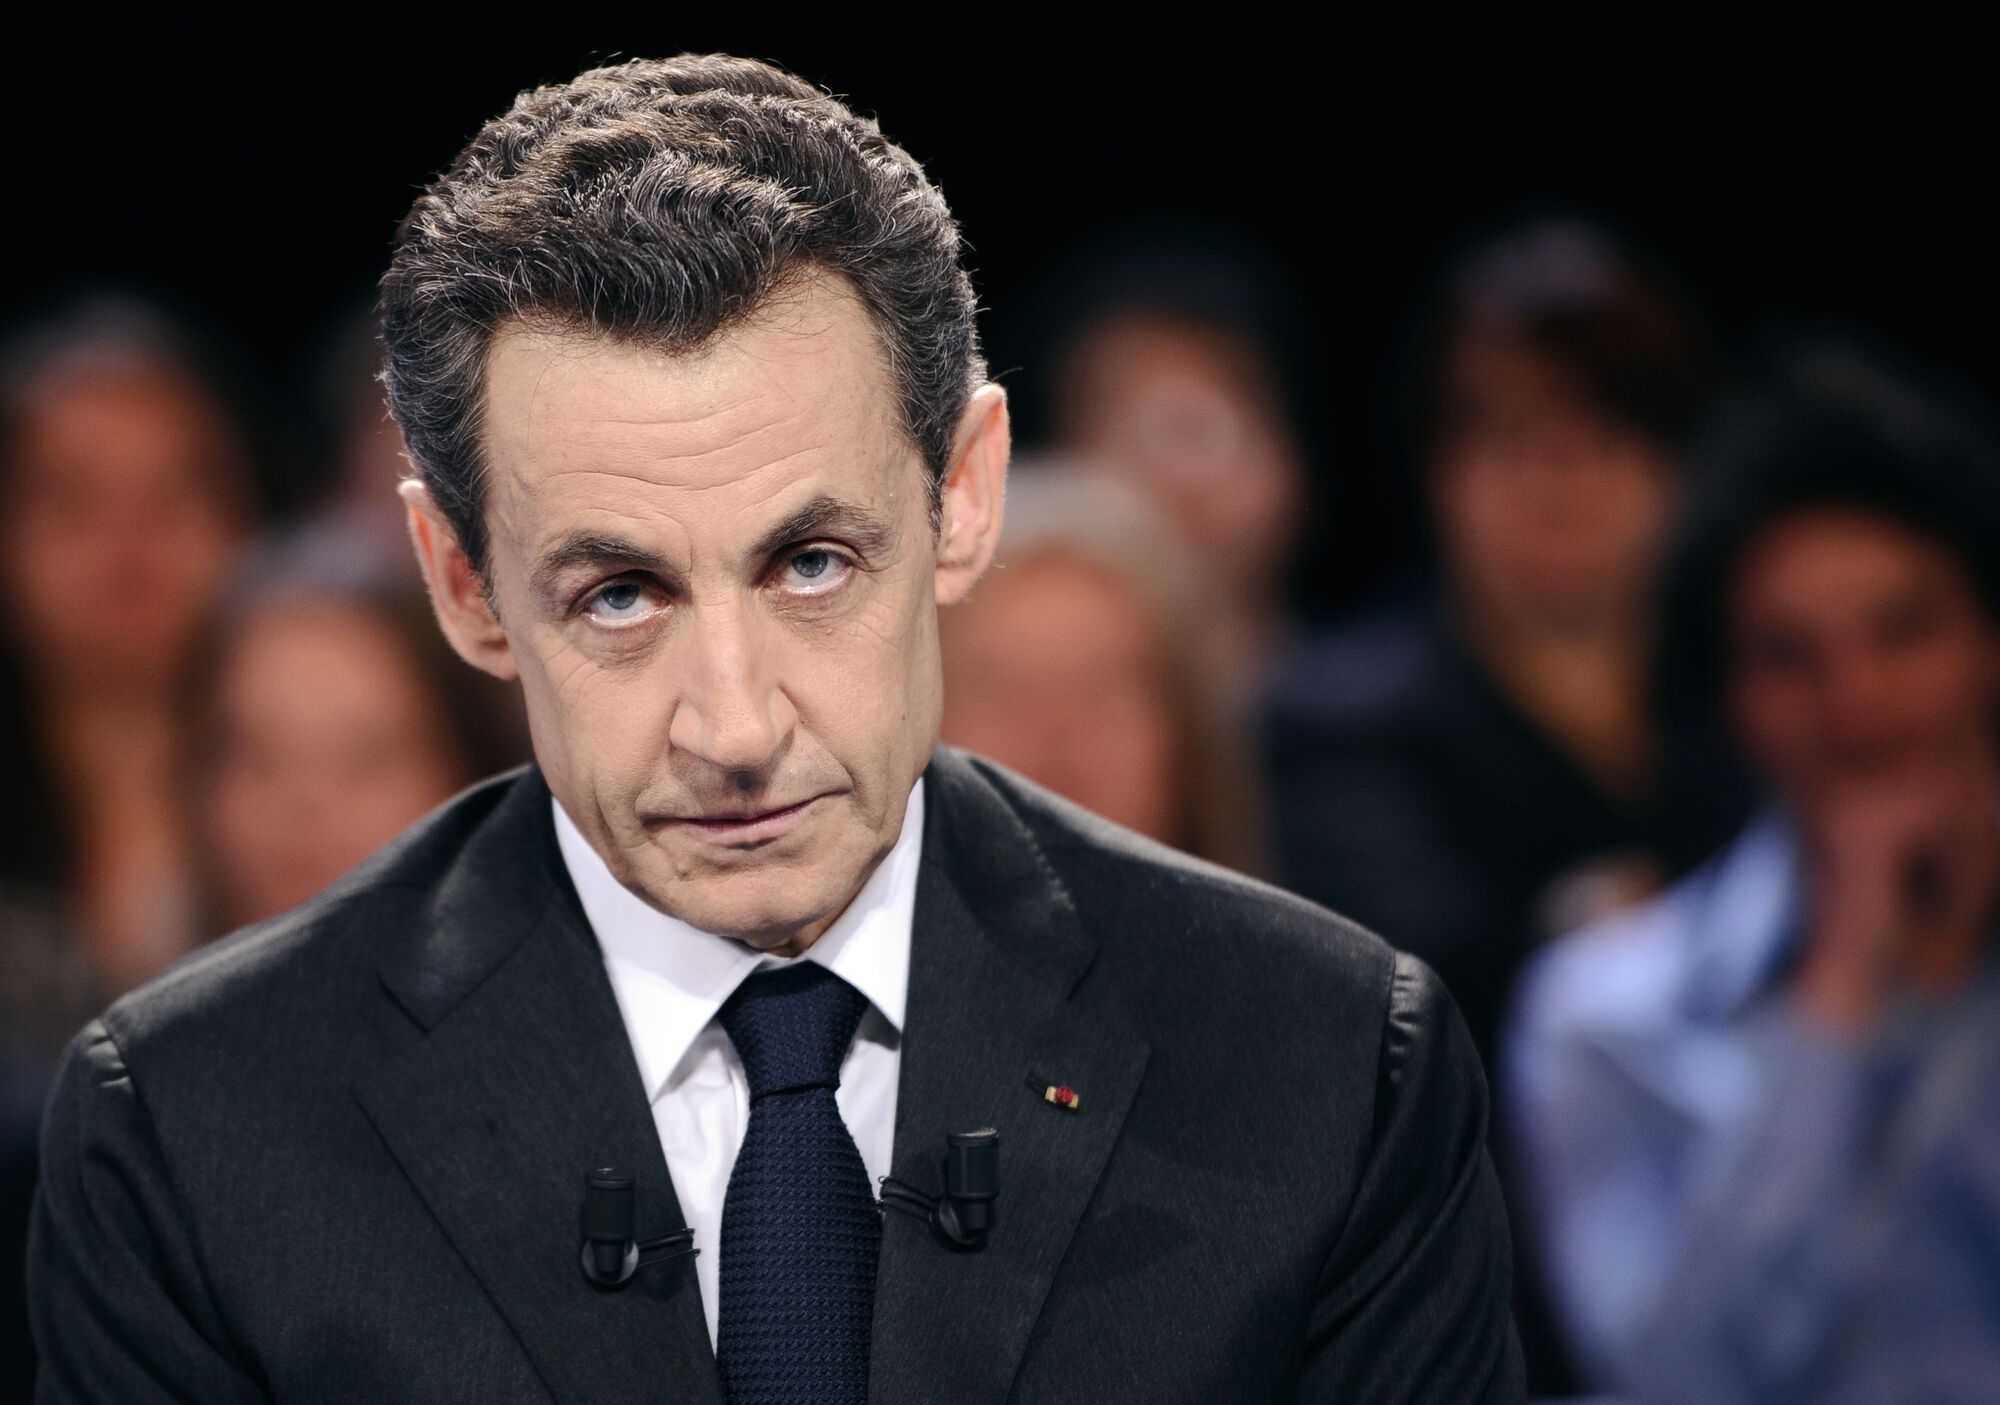 У Франції затримали екс-президента Саркозі